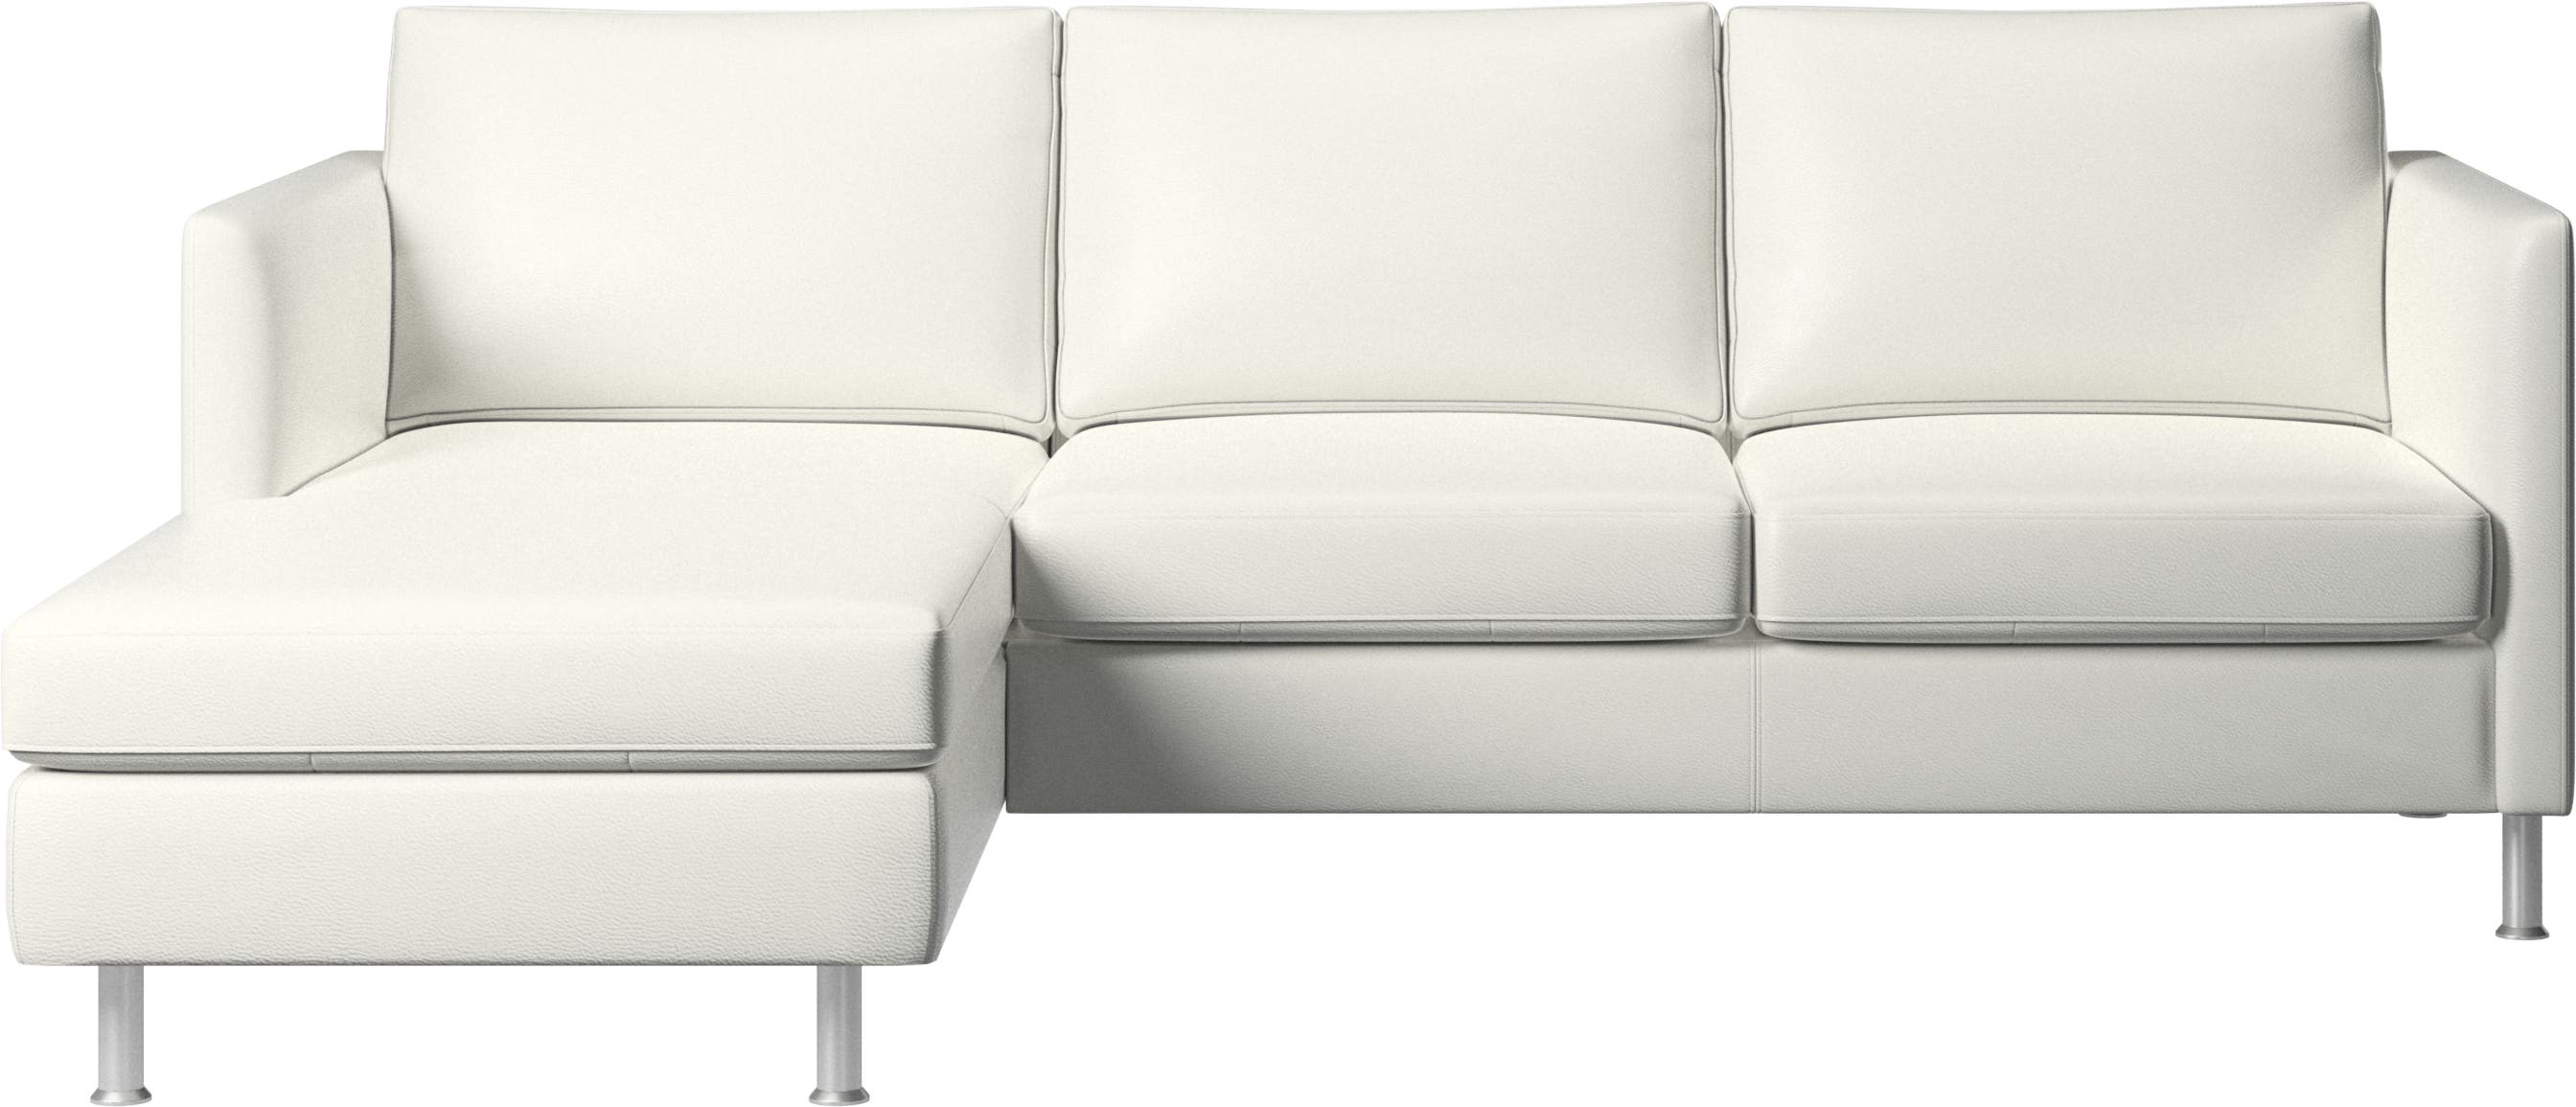 Indivi sofa with resting unit